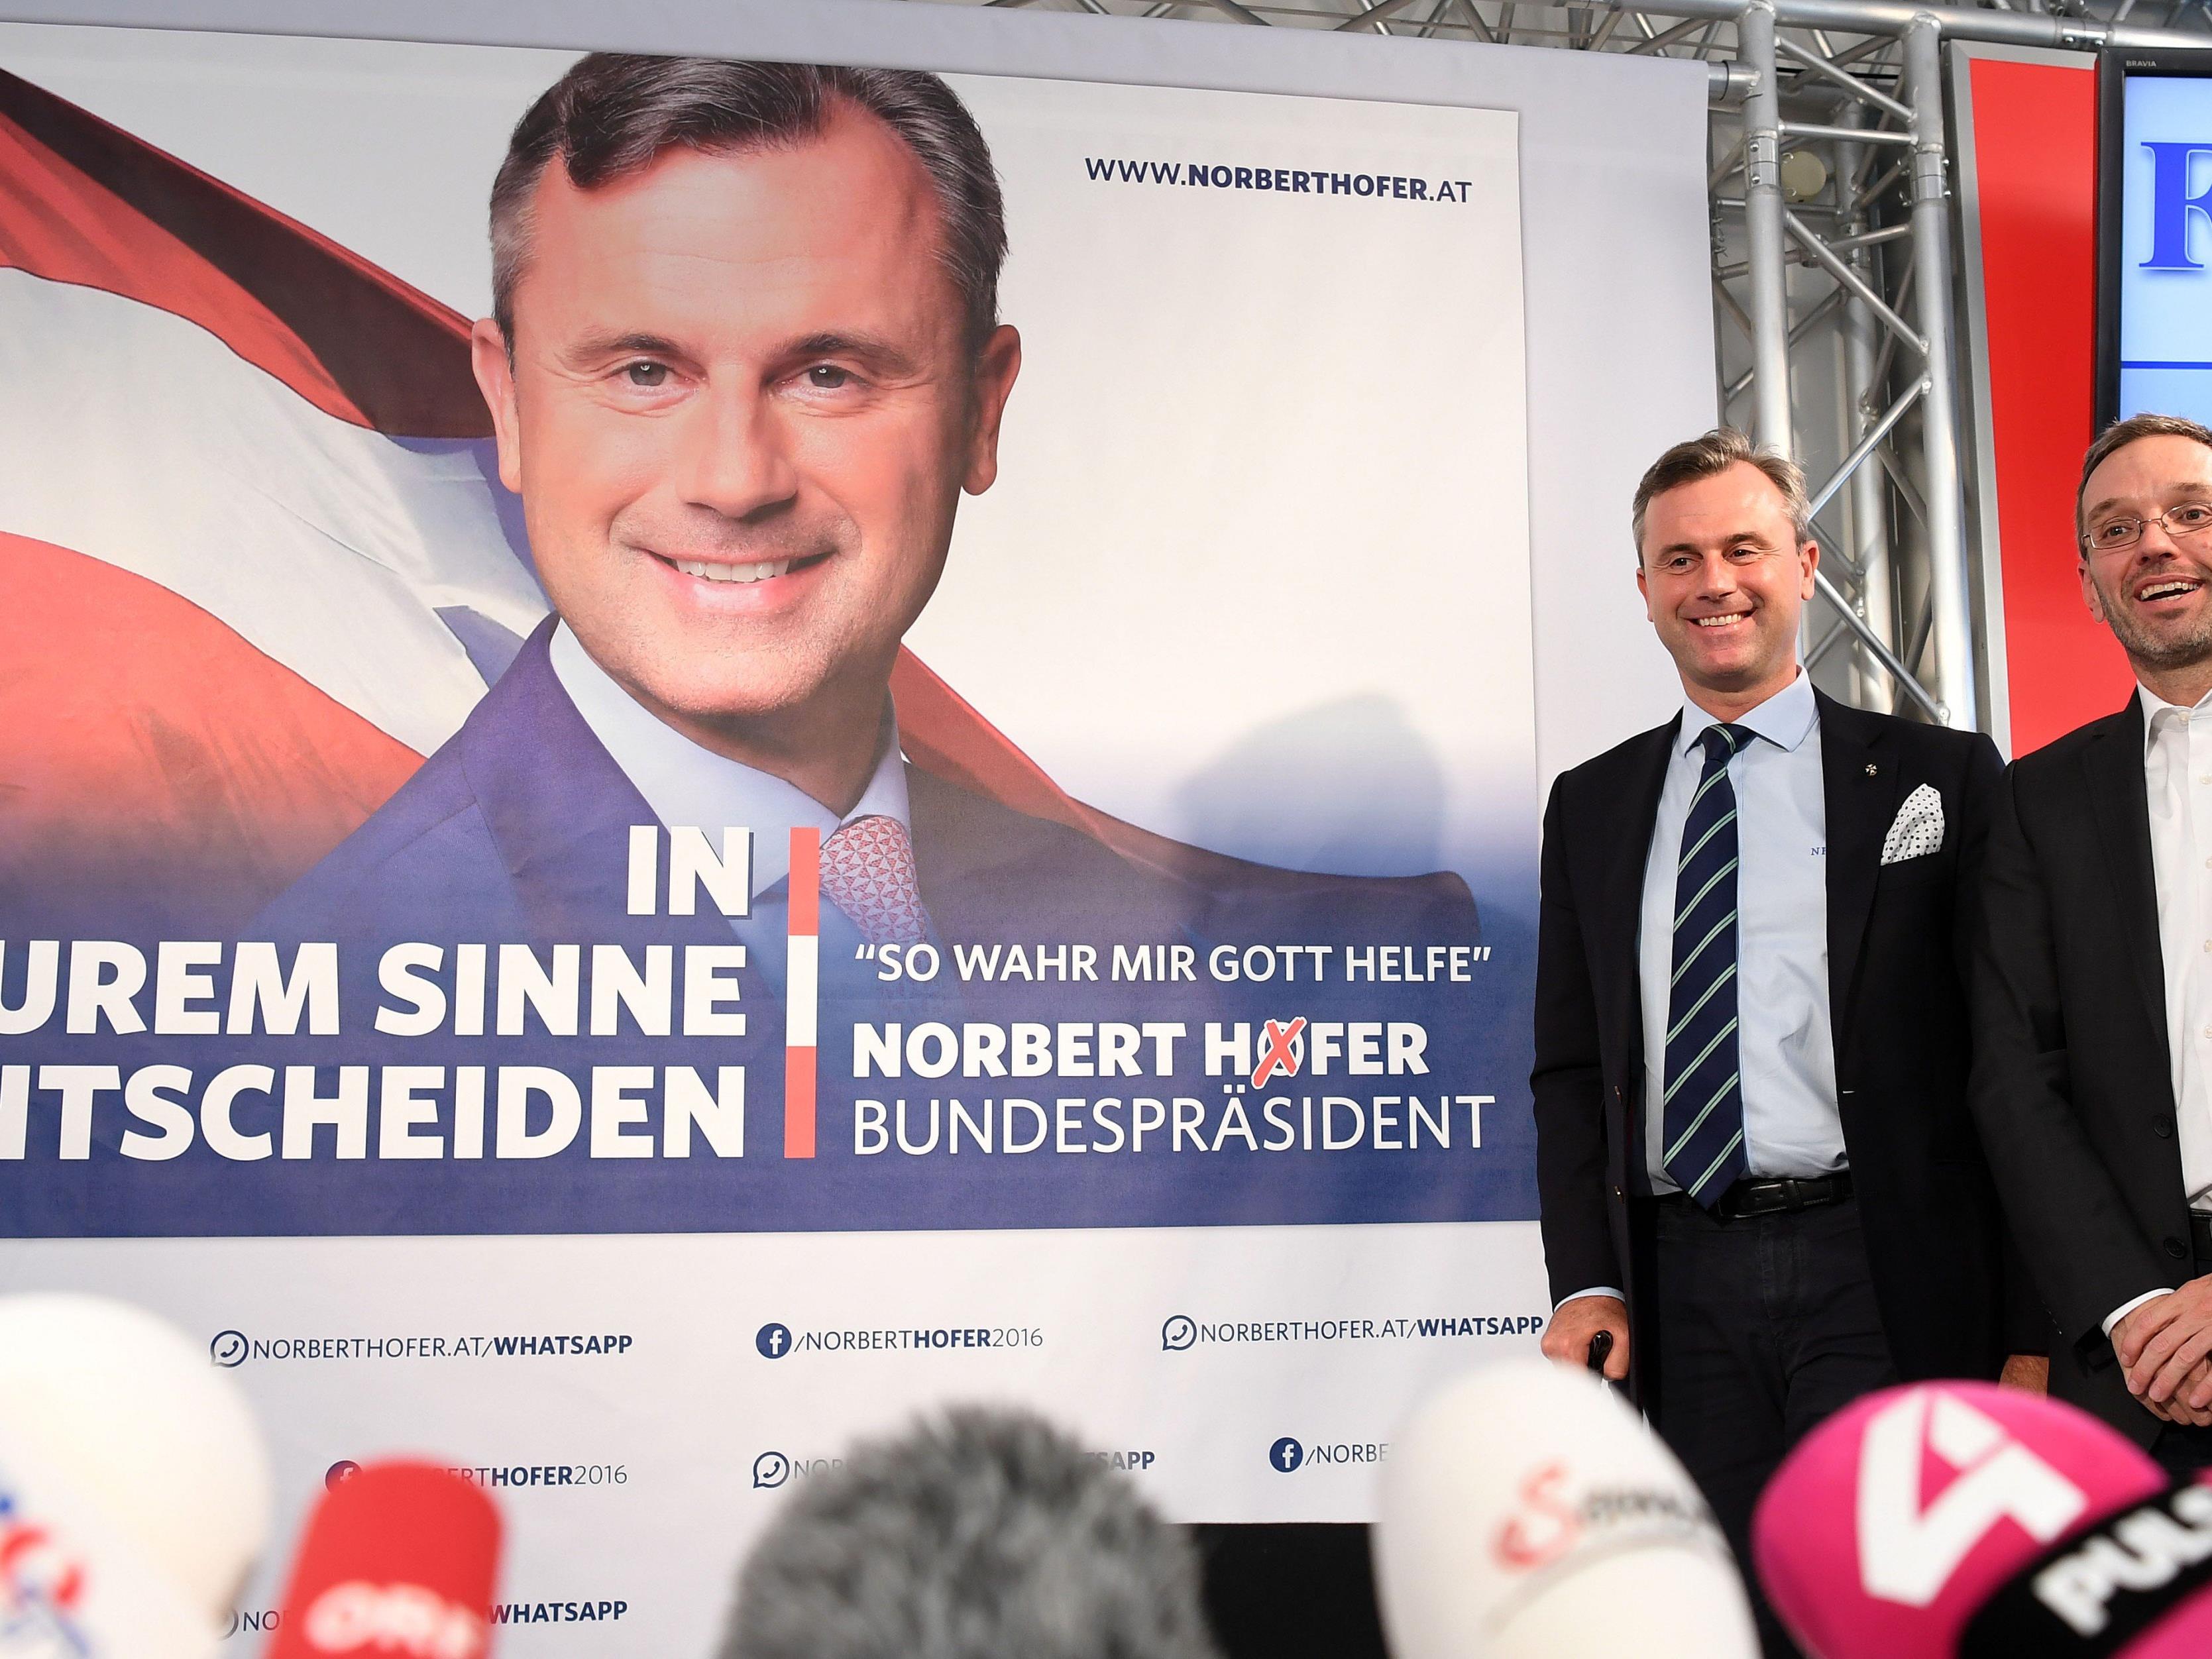 Die neuen Plakate der Hofer-Wahlkampagne wurden präsentiert und aufgehängt